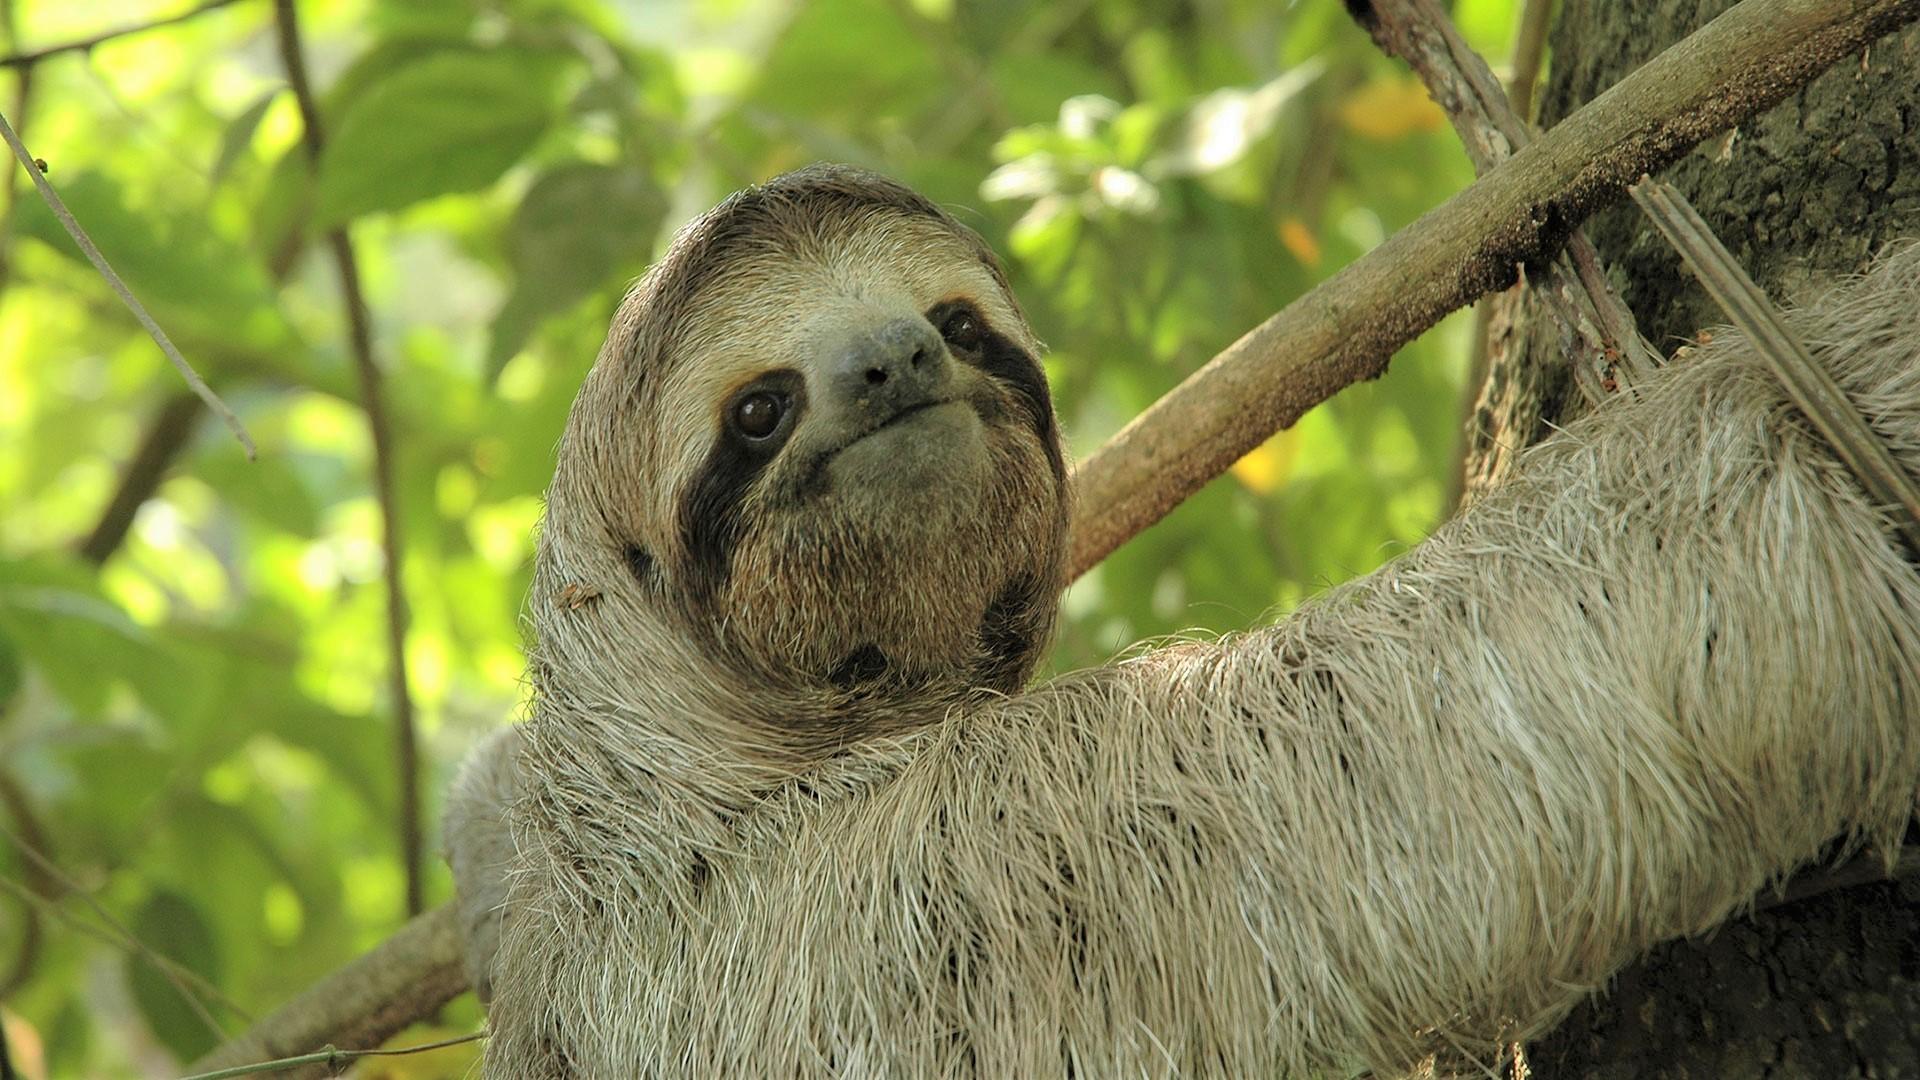 astro sloth wallpaper